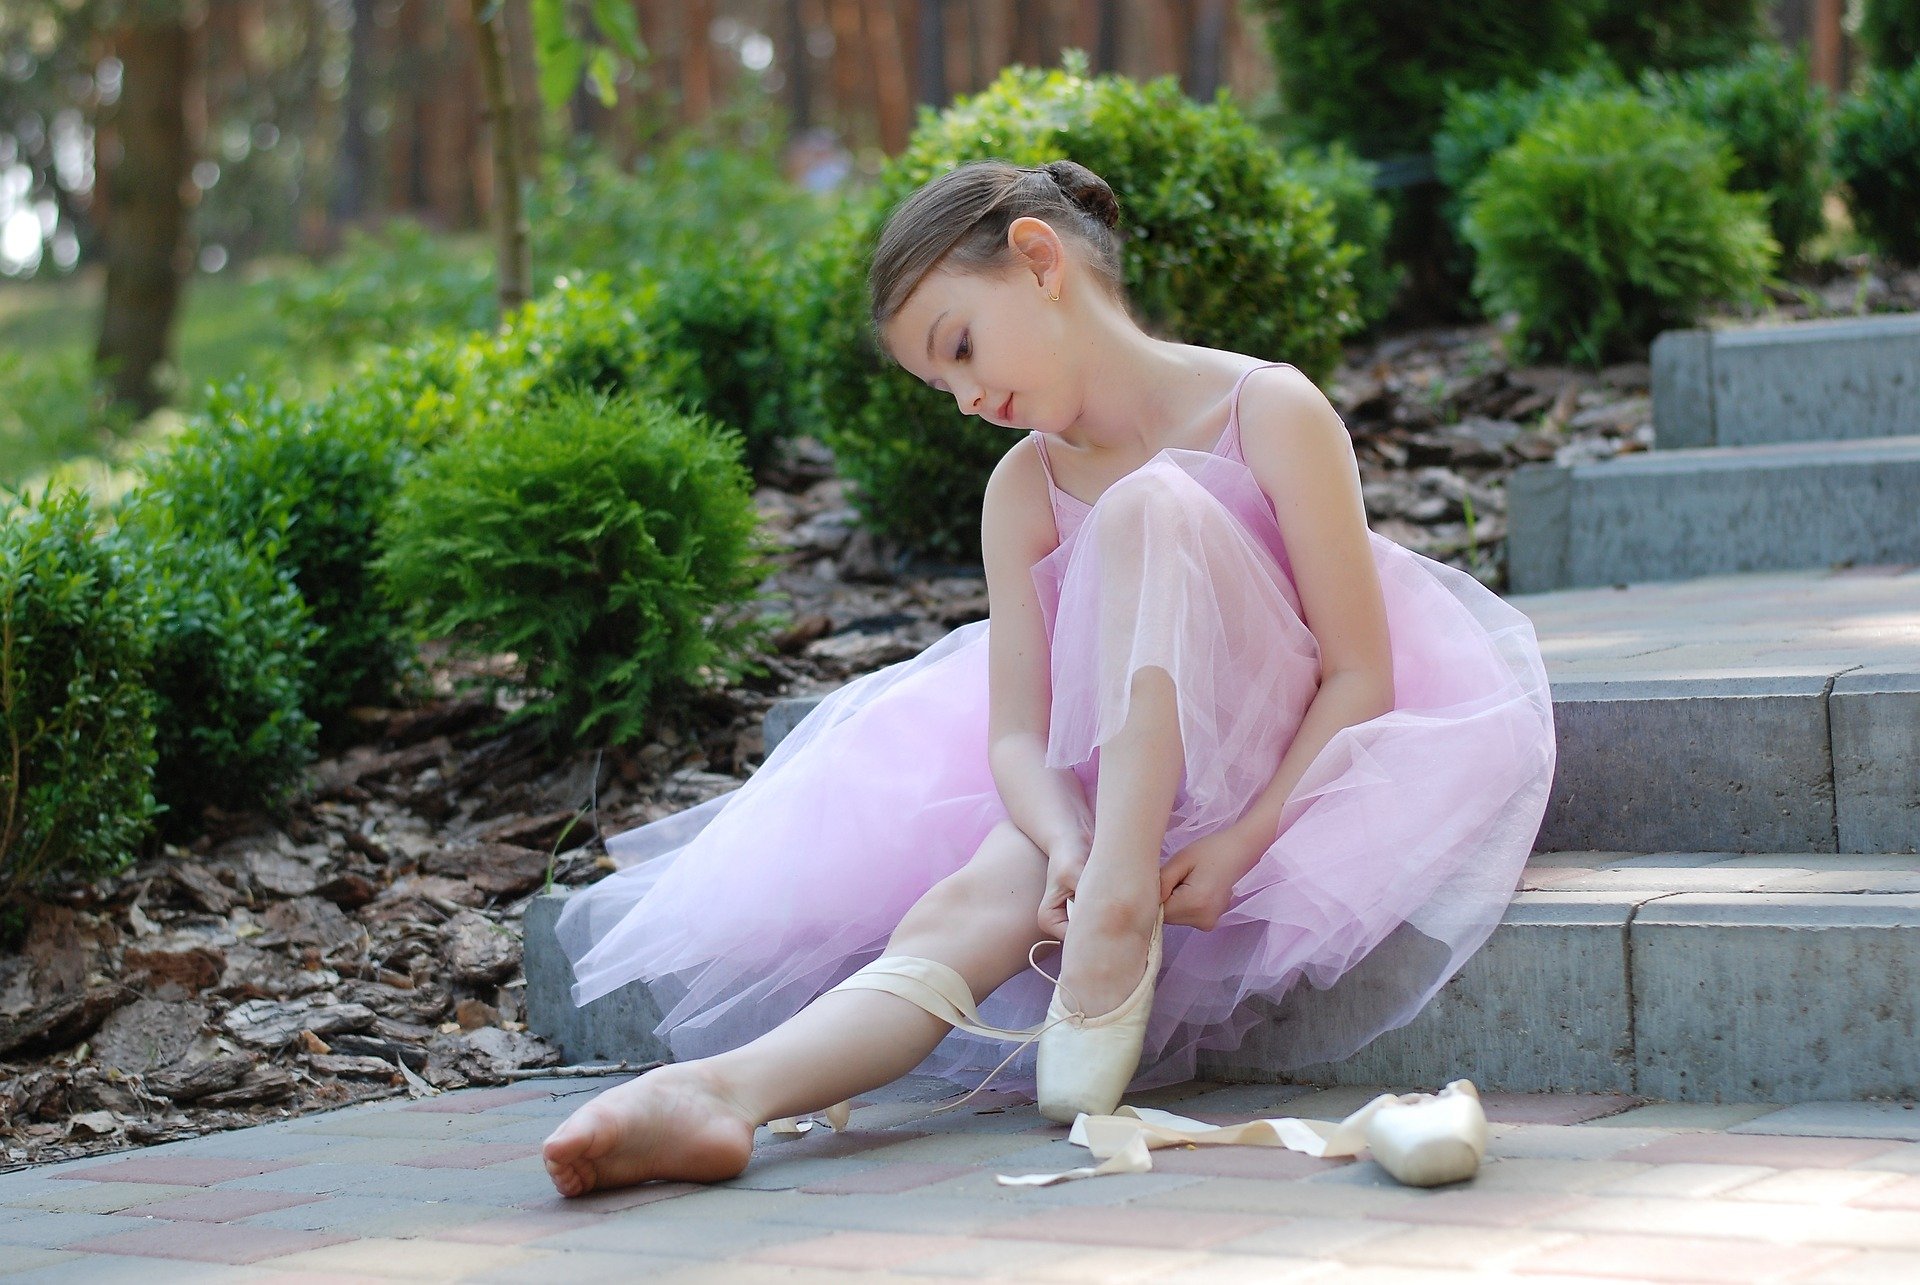 Мастер-класс по истории создания балетного костюма провели представители Дома культуры «Первомайское»